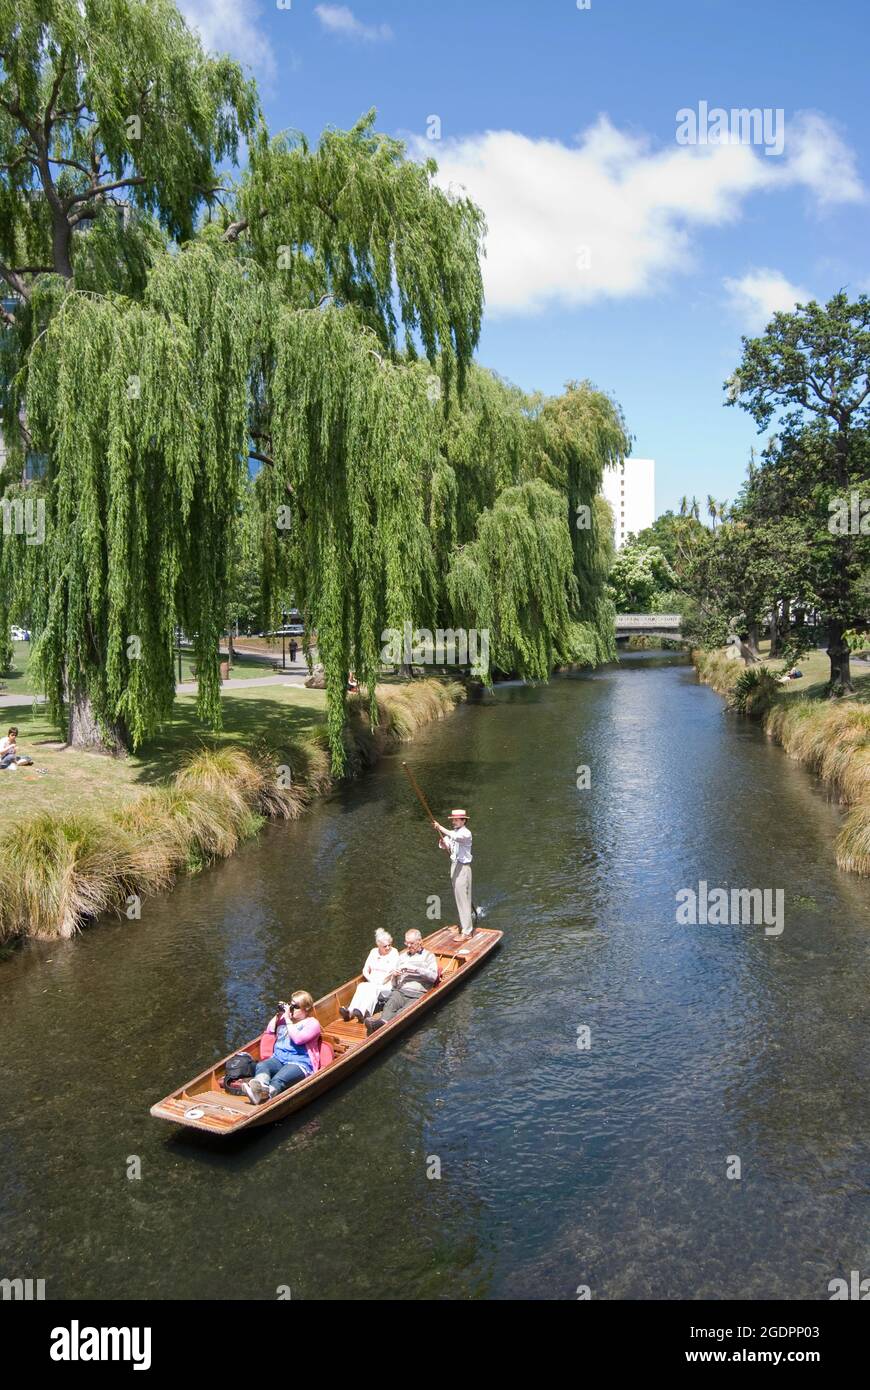 Stechkahn fahren am Fluss Avon von Durham Street Bridge, Christchurch, Canterbury, Neuseeland Stockfoto